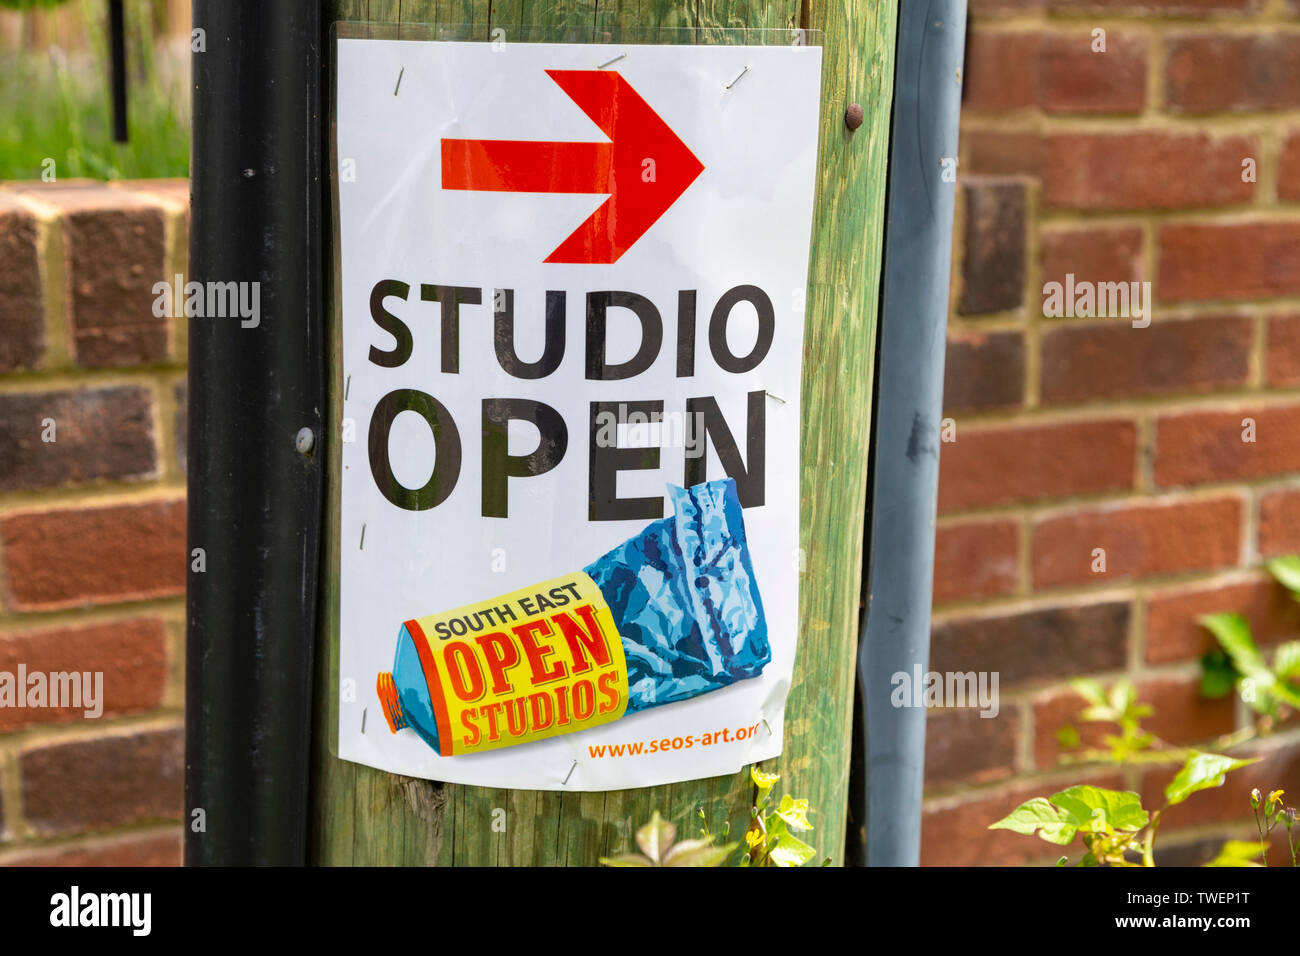 Sud est open studios segno, tenterden, kent, Regno Unito Foto Stock